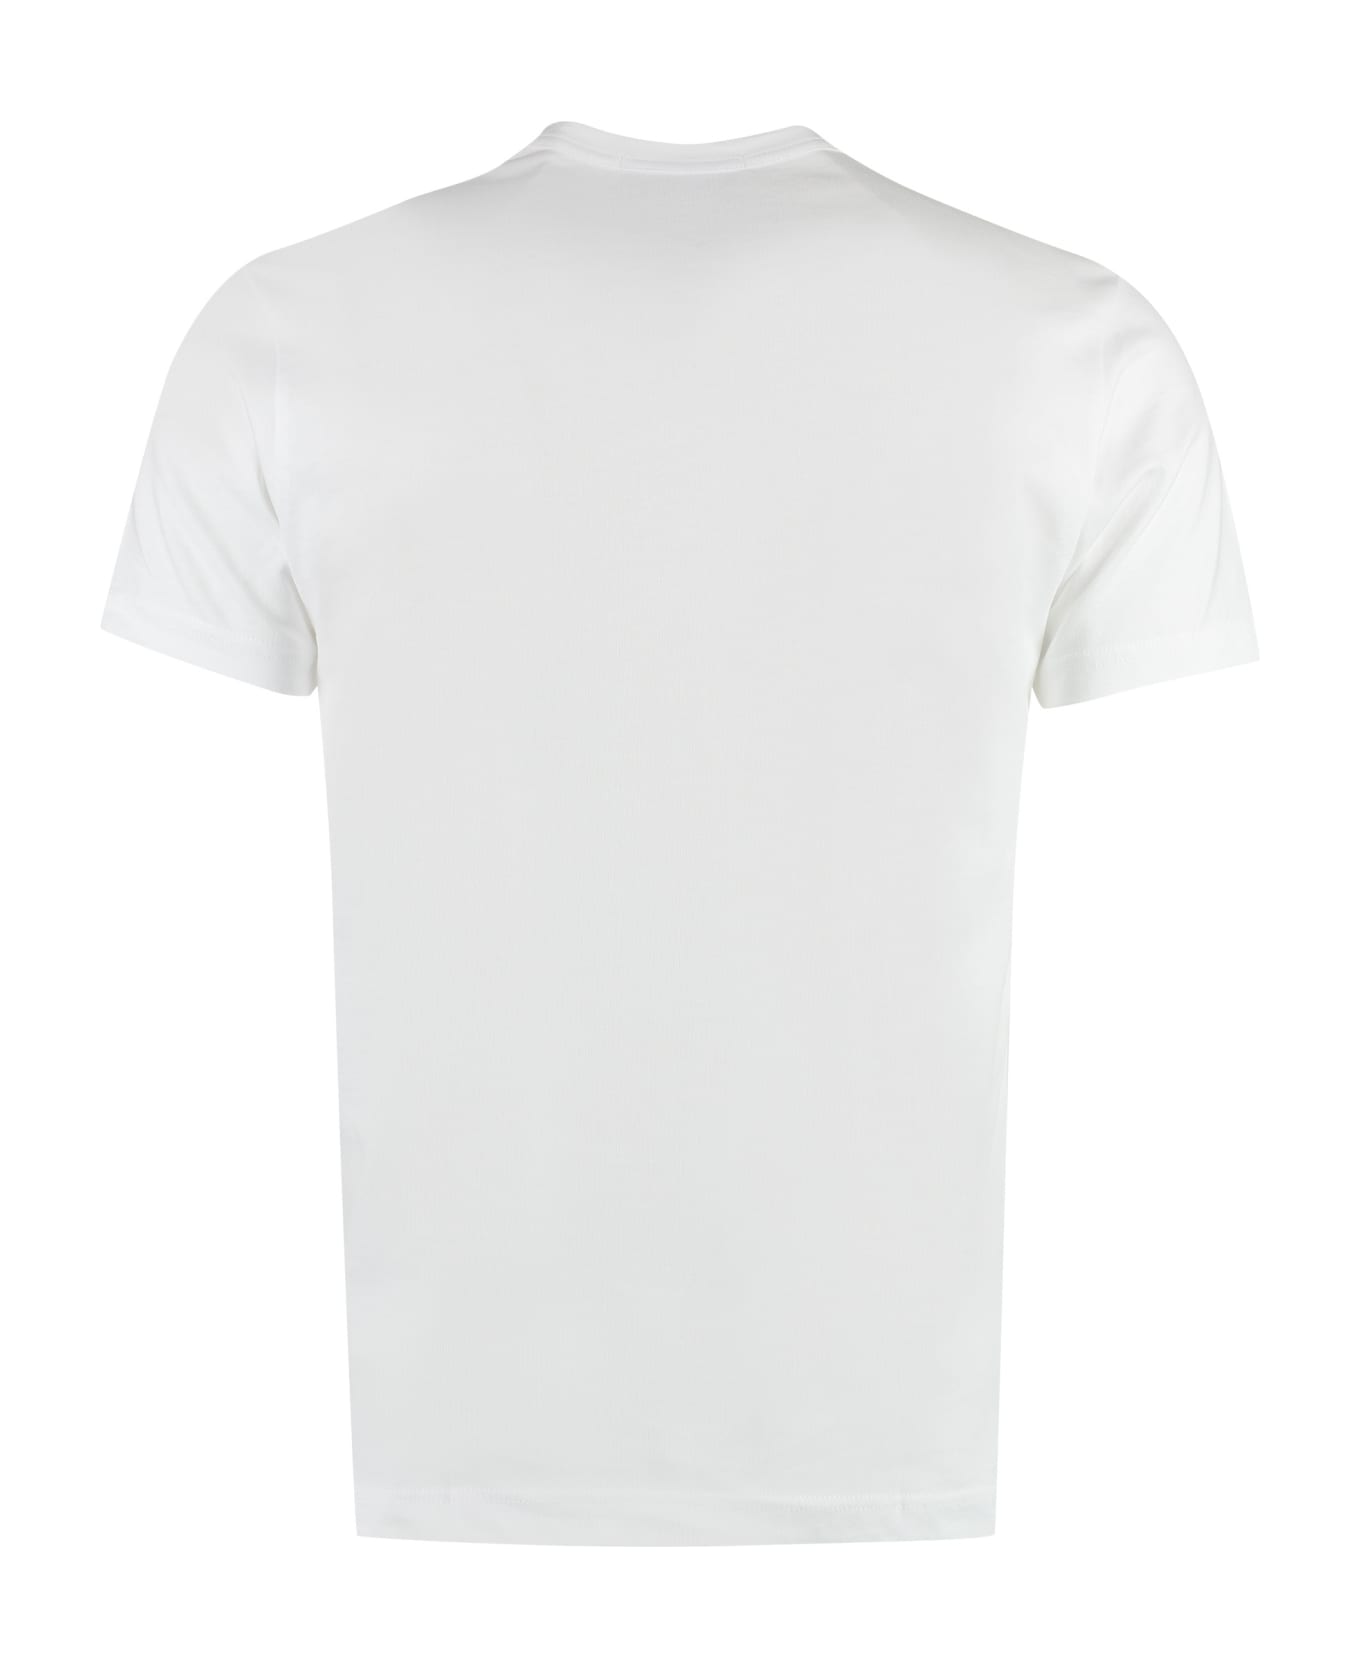 Comme des Garçons Shirt Printed Cotton T-shirt - White